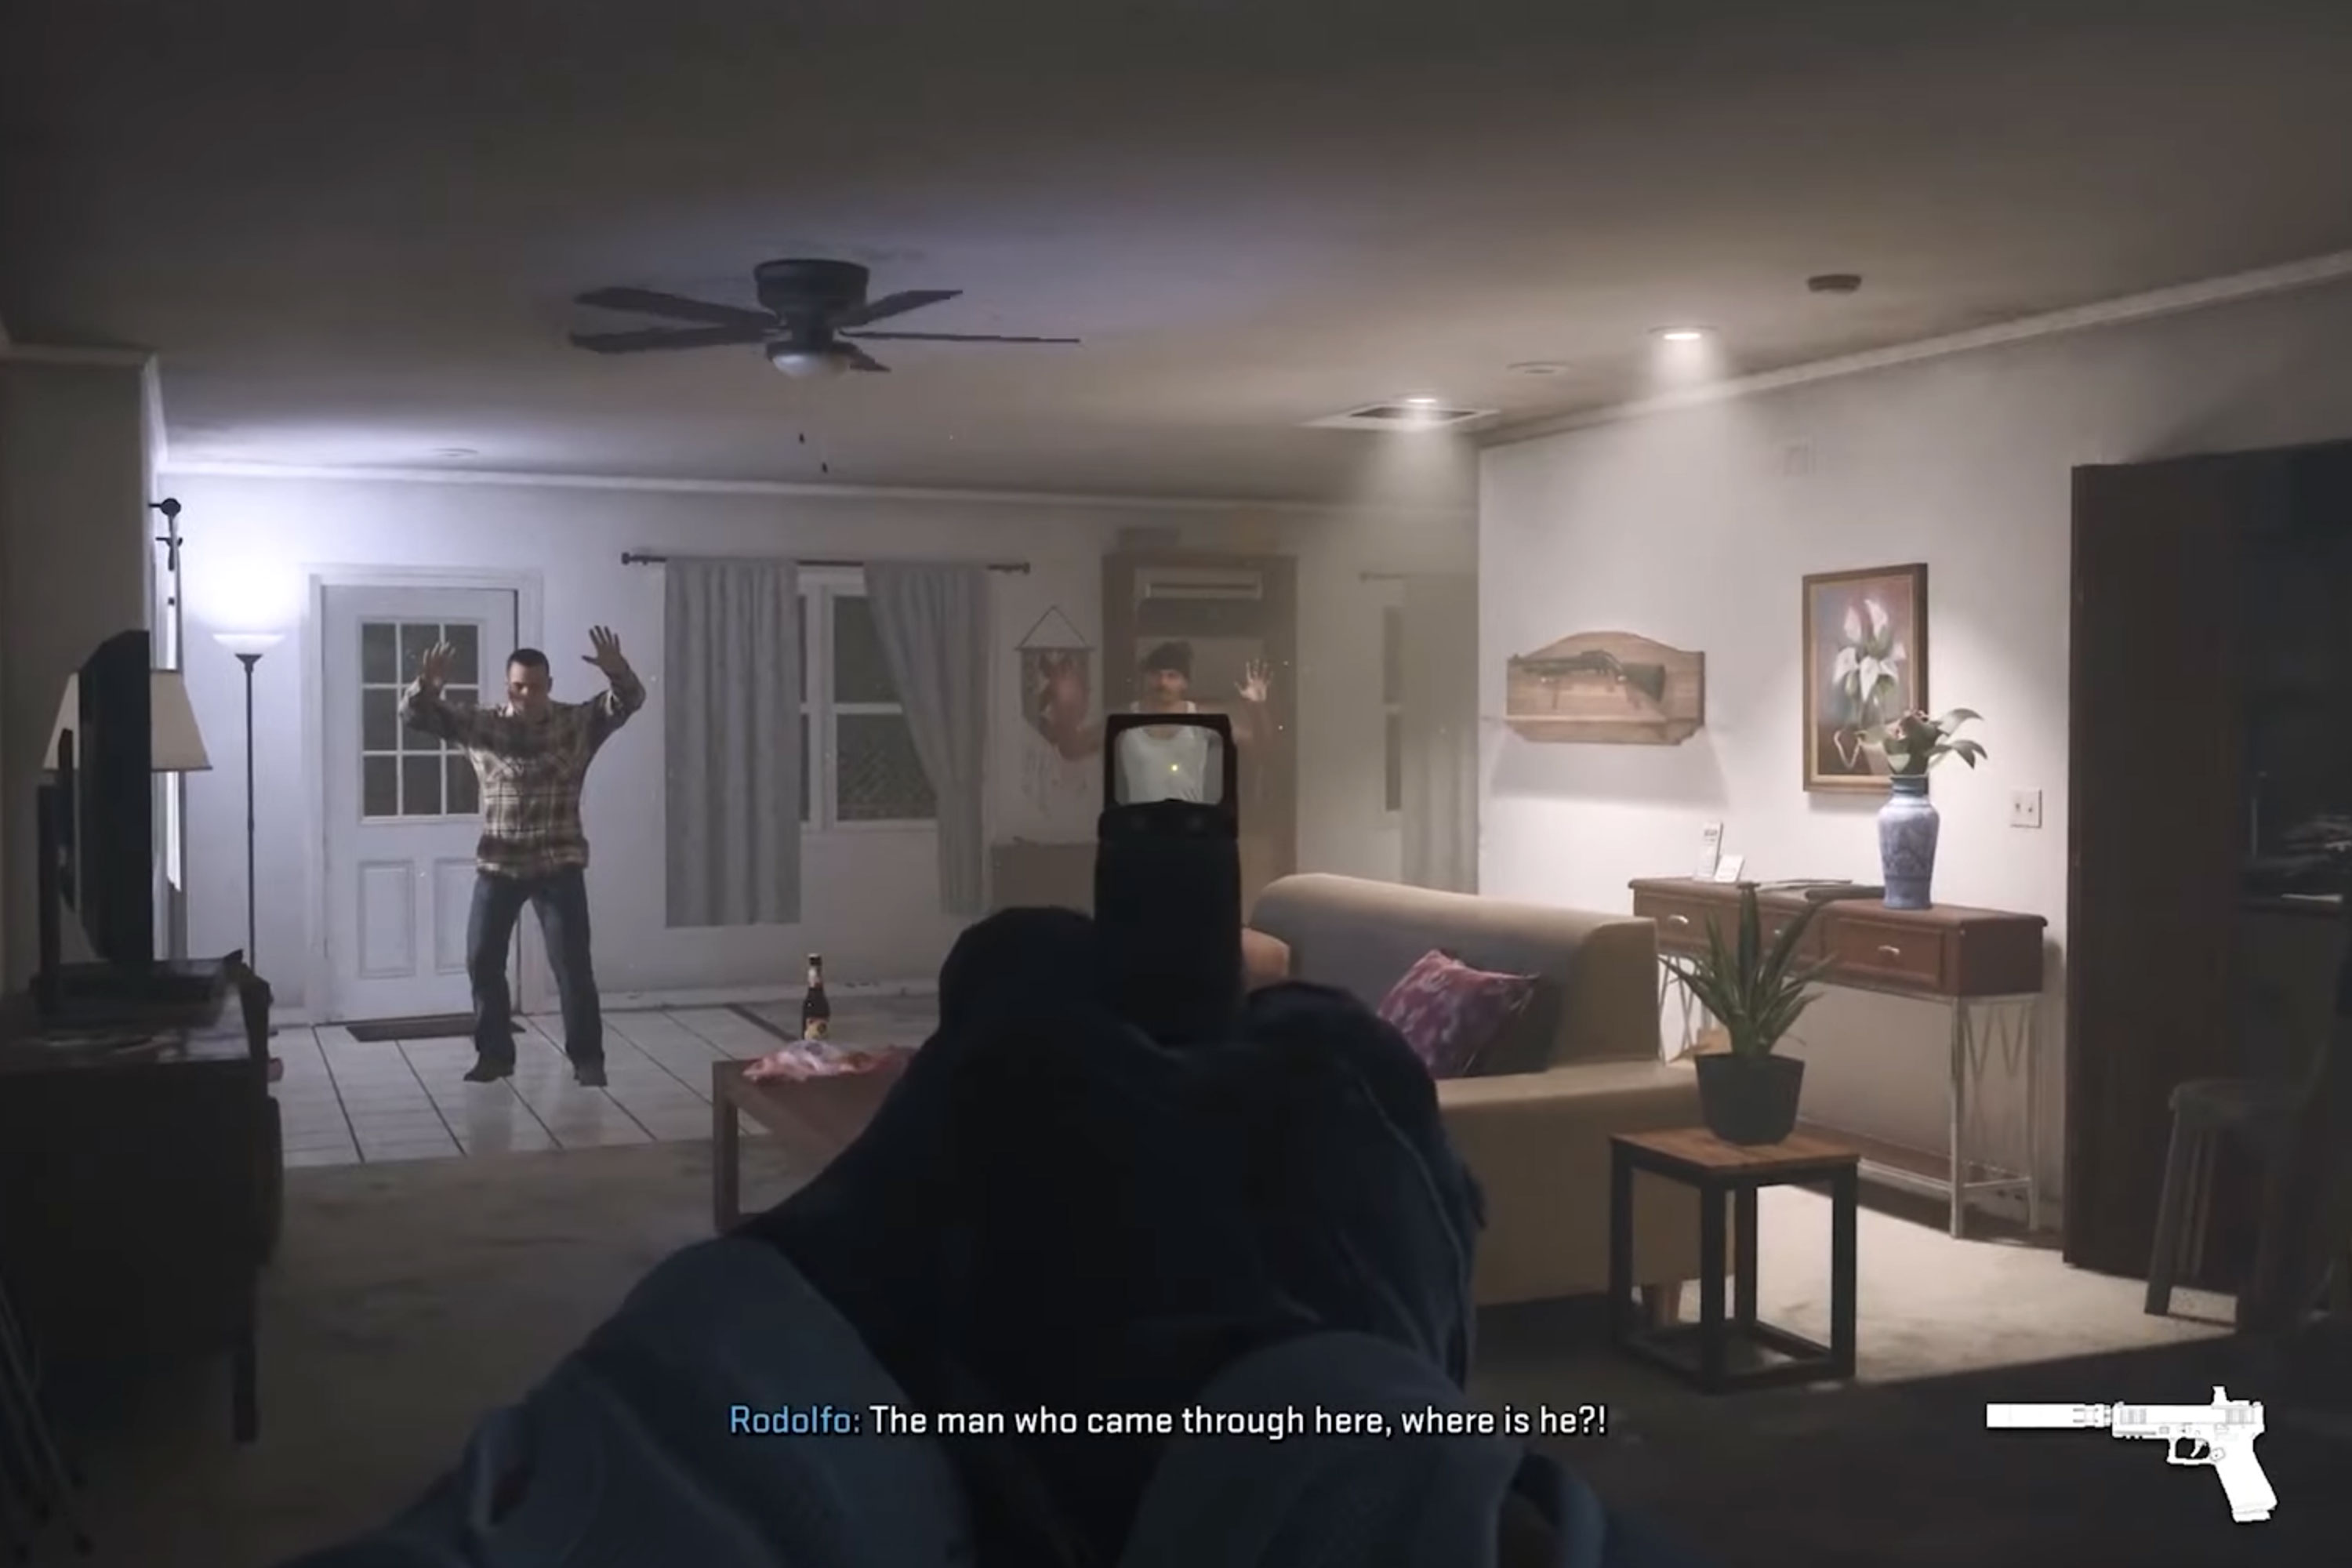 "बॉर्डरलाइन" मिशन से एक घर के अंदर एक नागरिक पर बंदूक की ओर इशारा करते हुए मॉडर्न वारफेयर 2 से एक छवि।